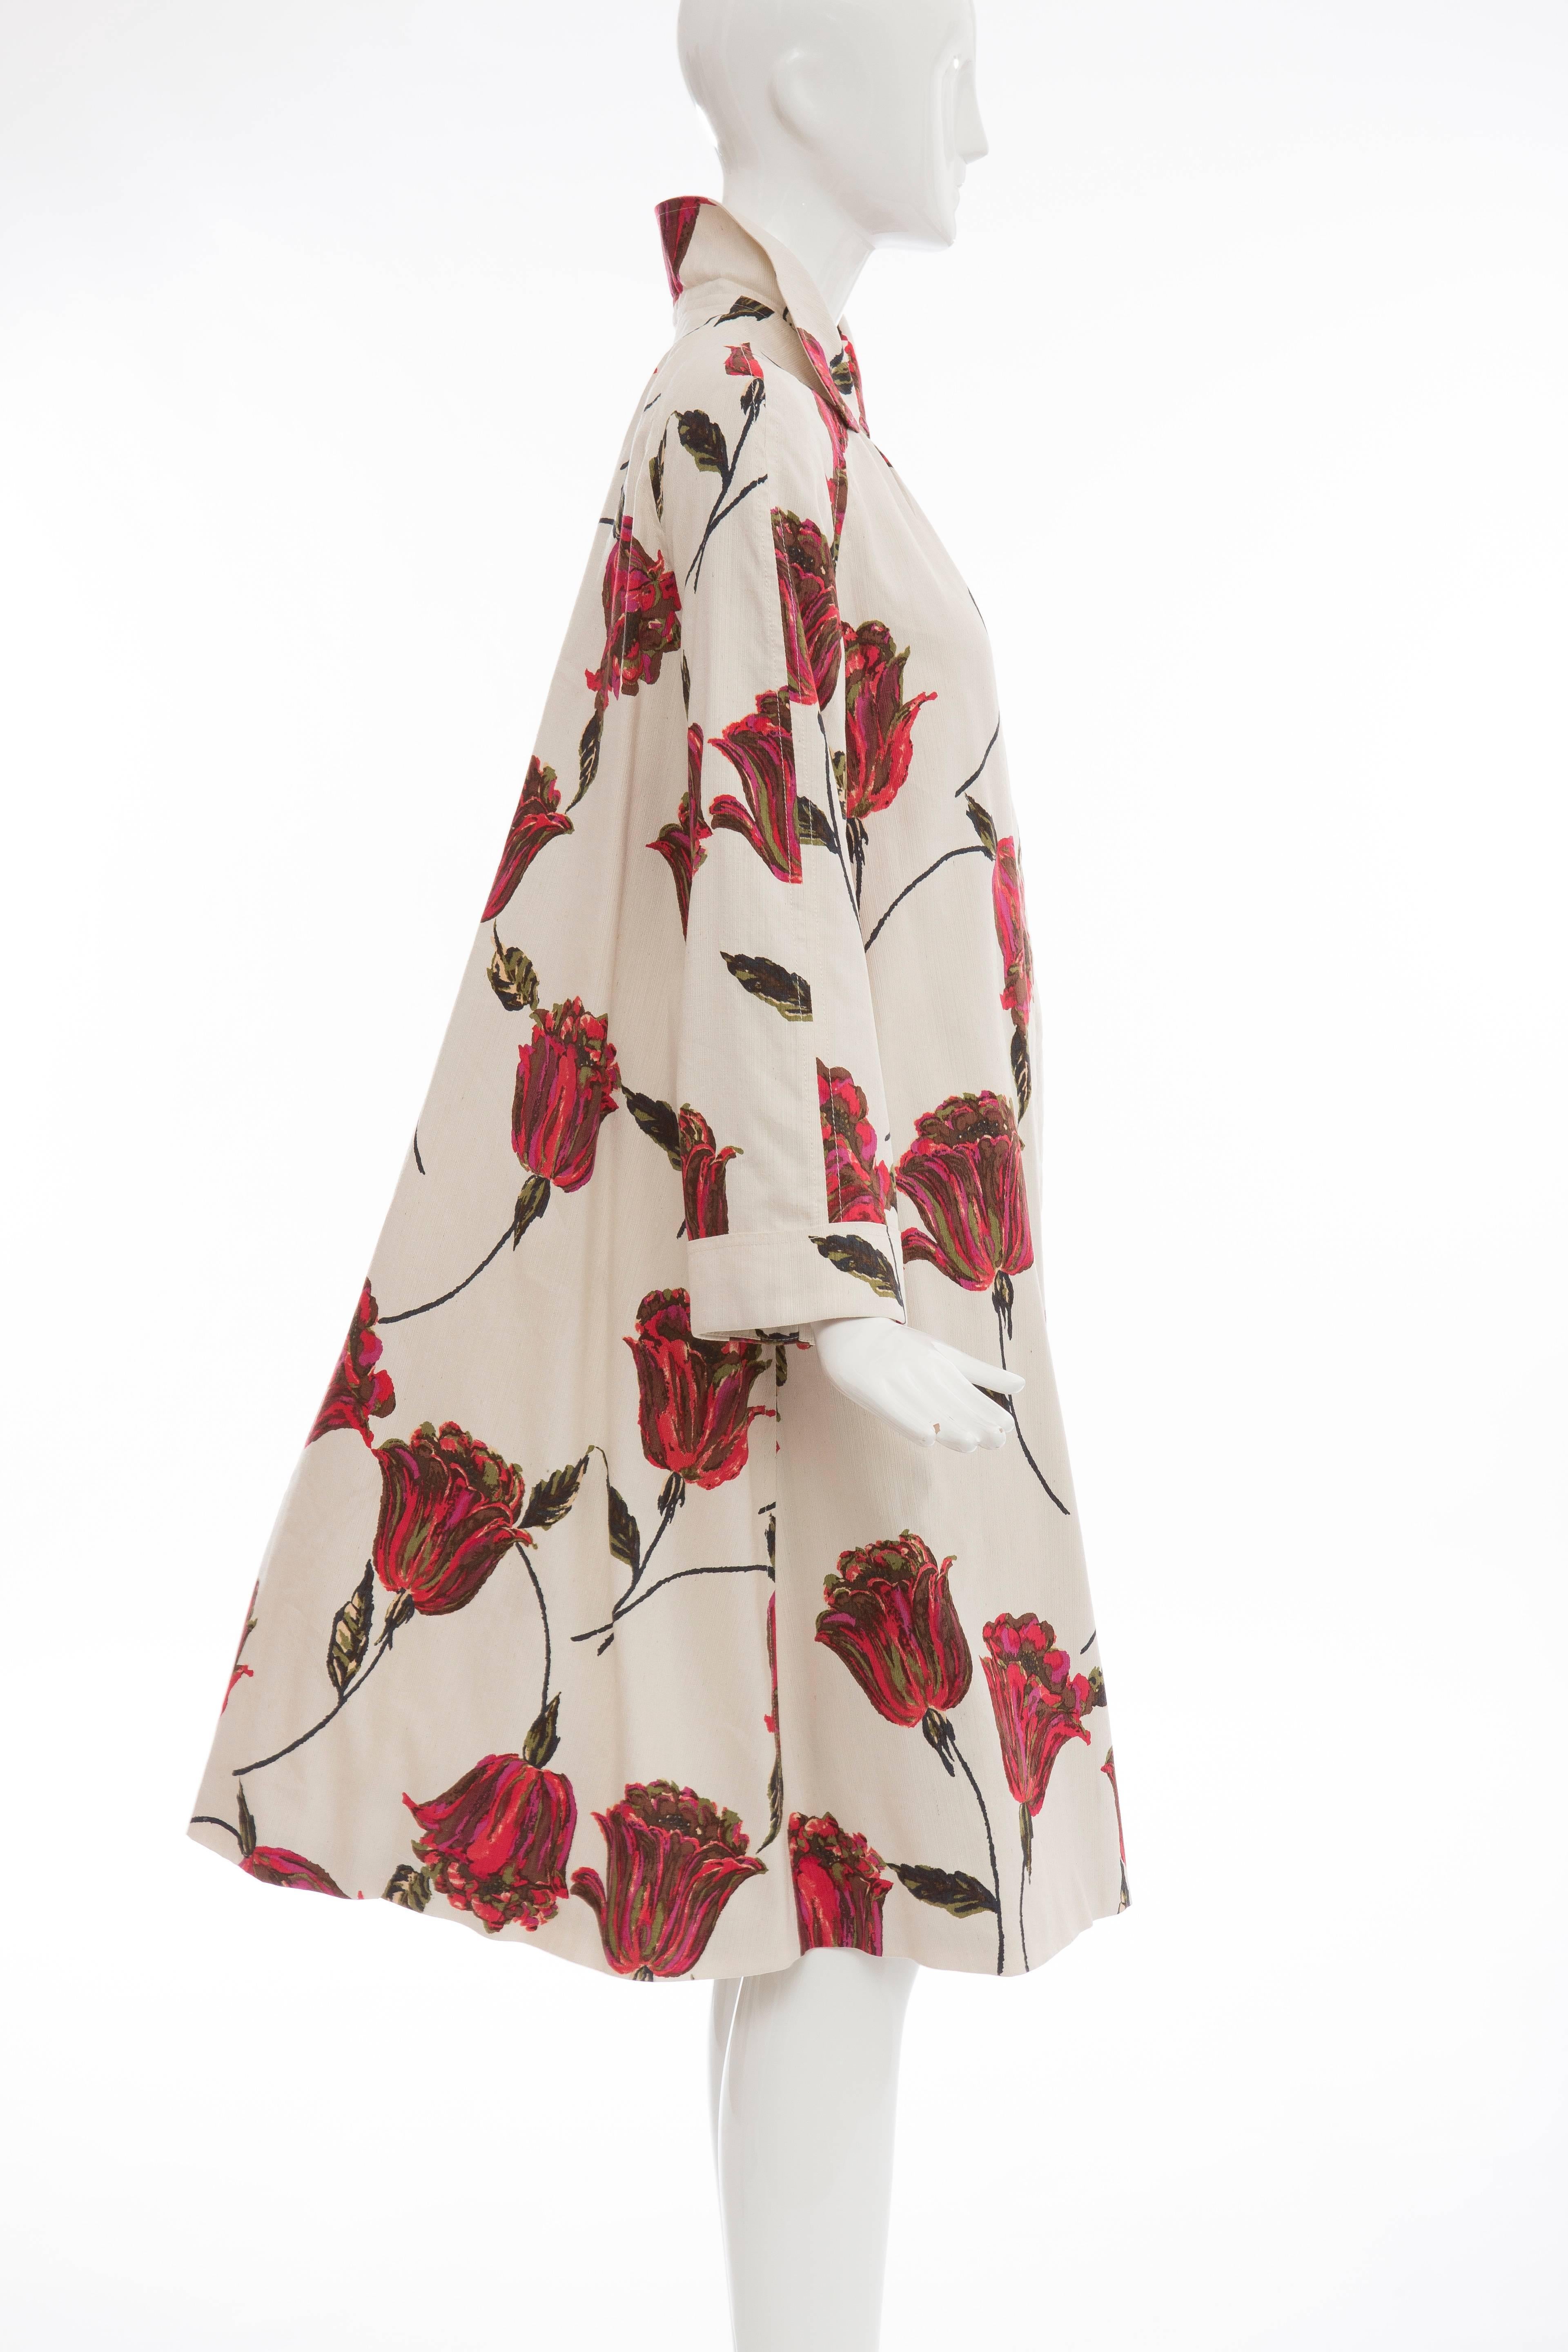 Dries Van Noten Runway Silk Cotton Linen Tulip Print Coat, Spring 2005 3